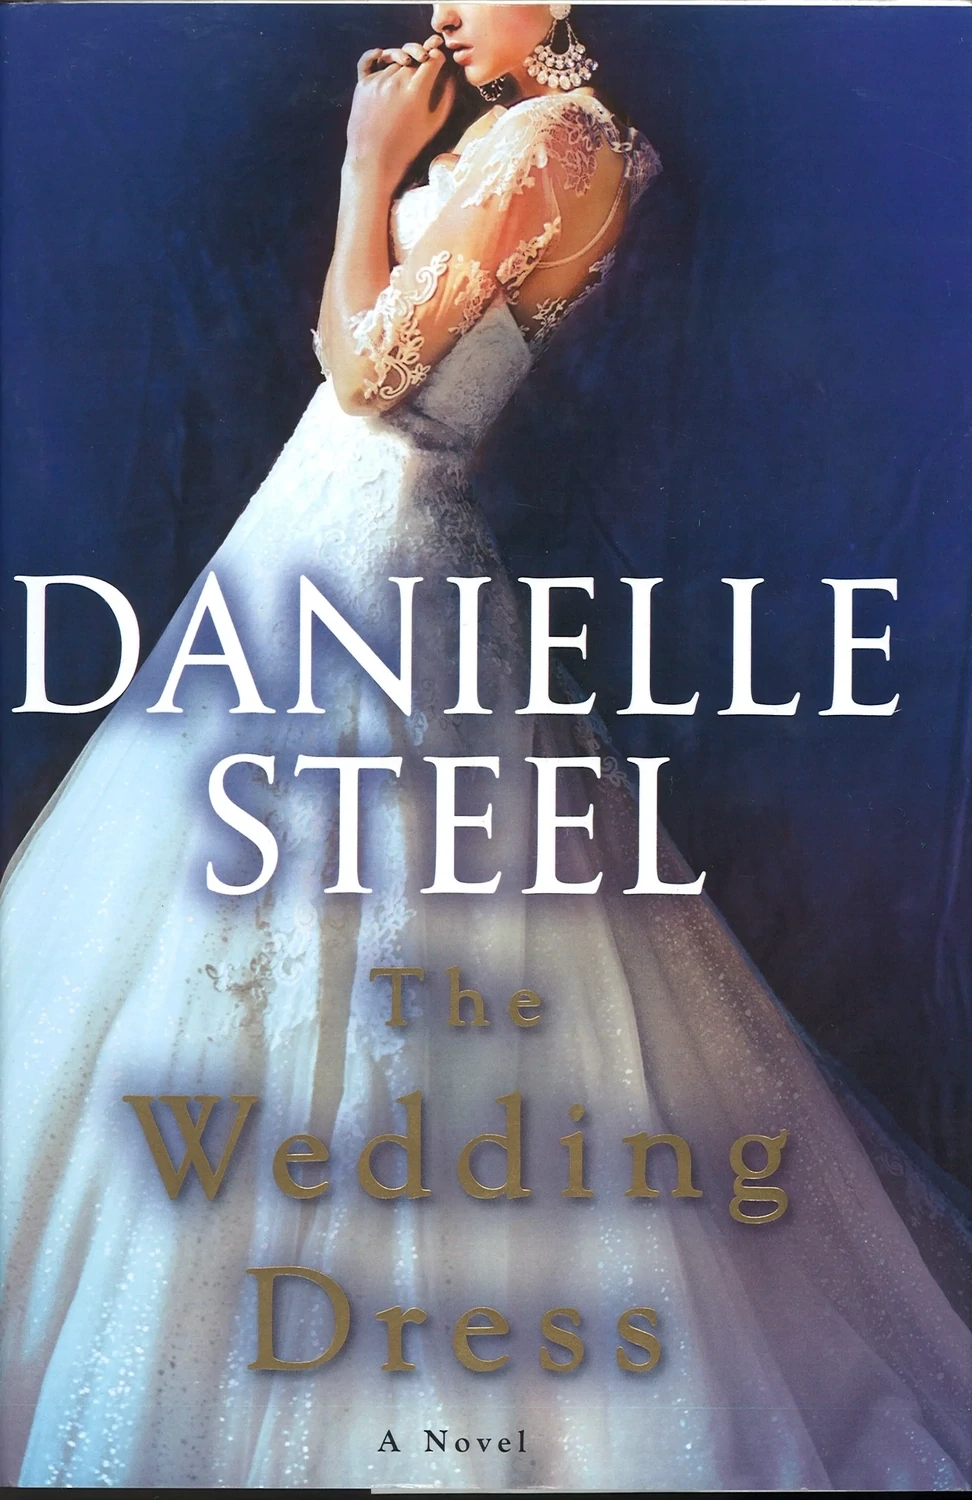 The Wedding Dress by Danielle Steel